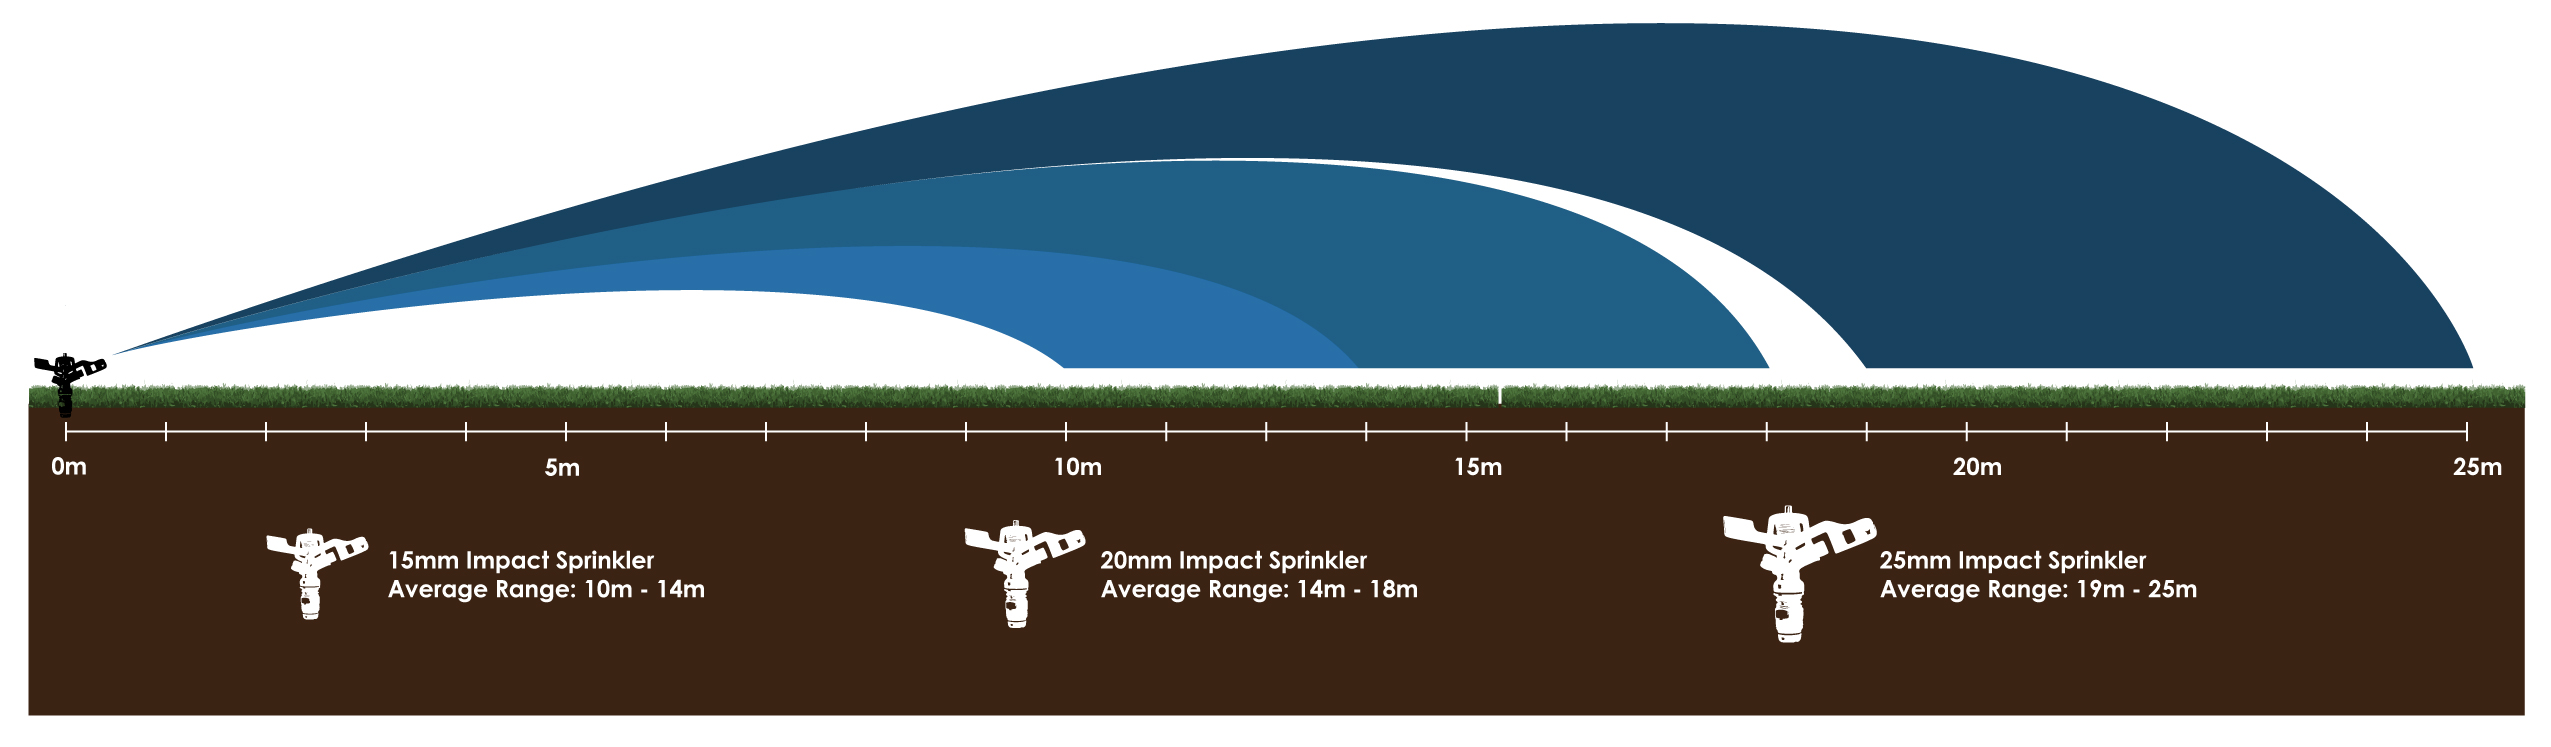 Impact-Sprinkler-Range-Chart-3